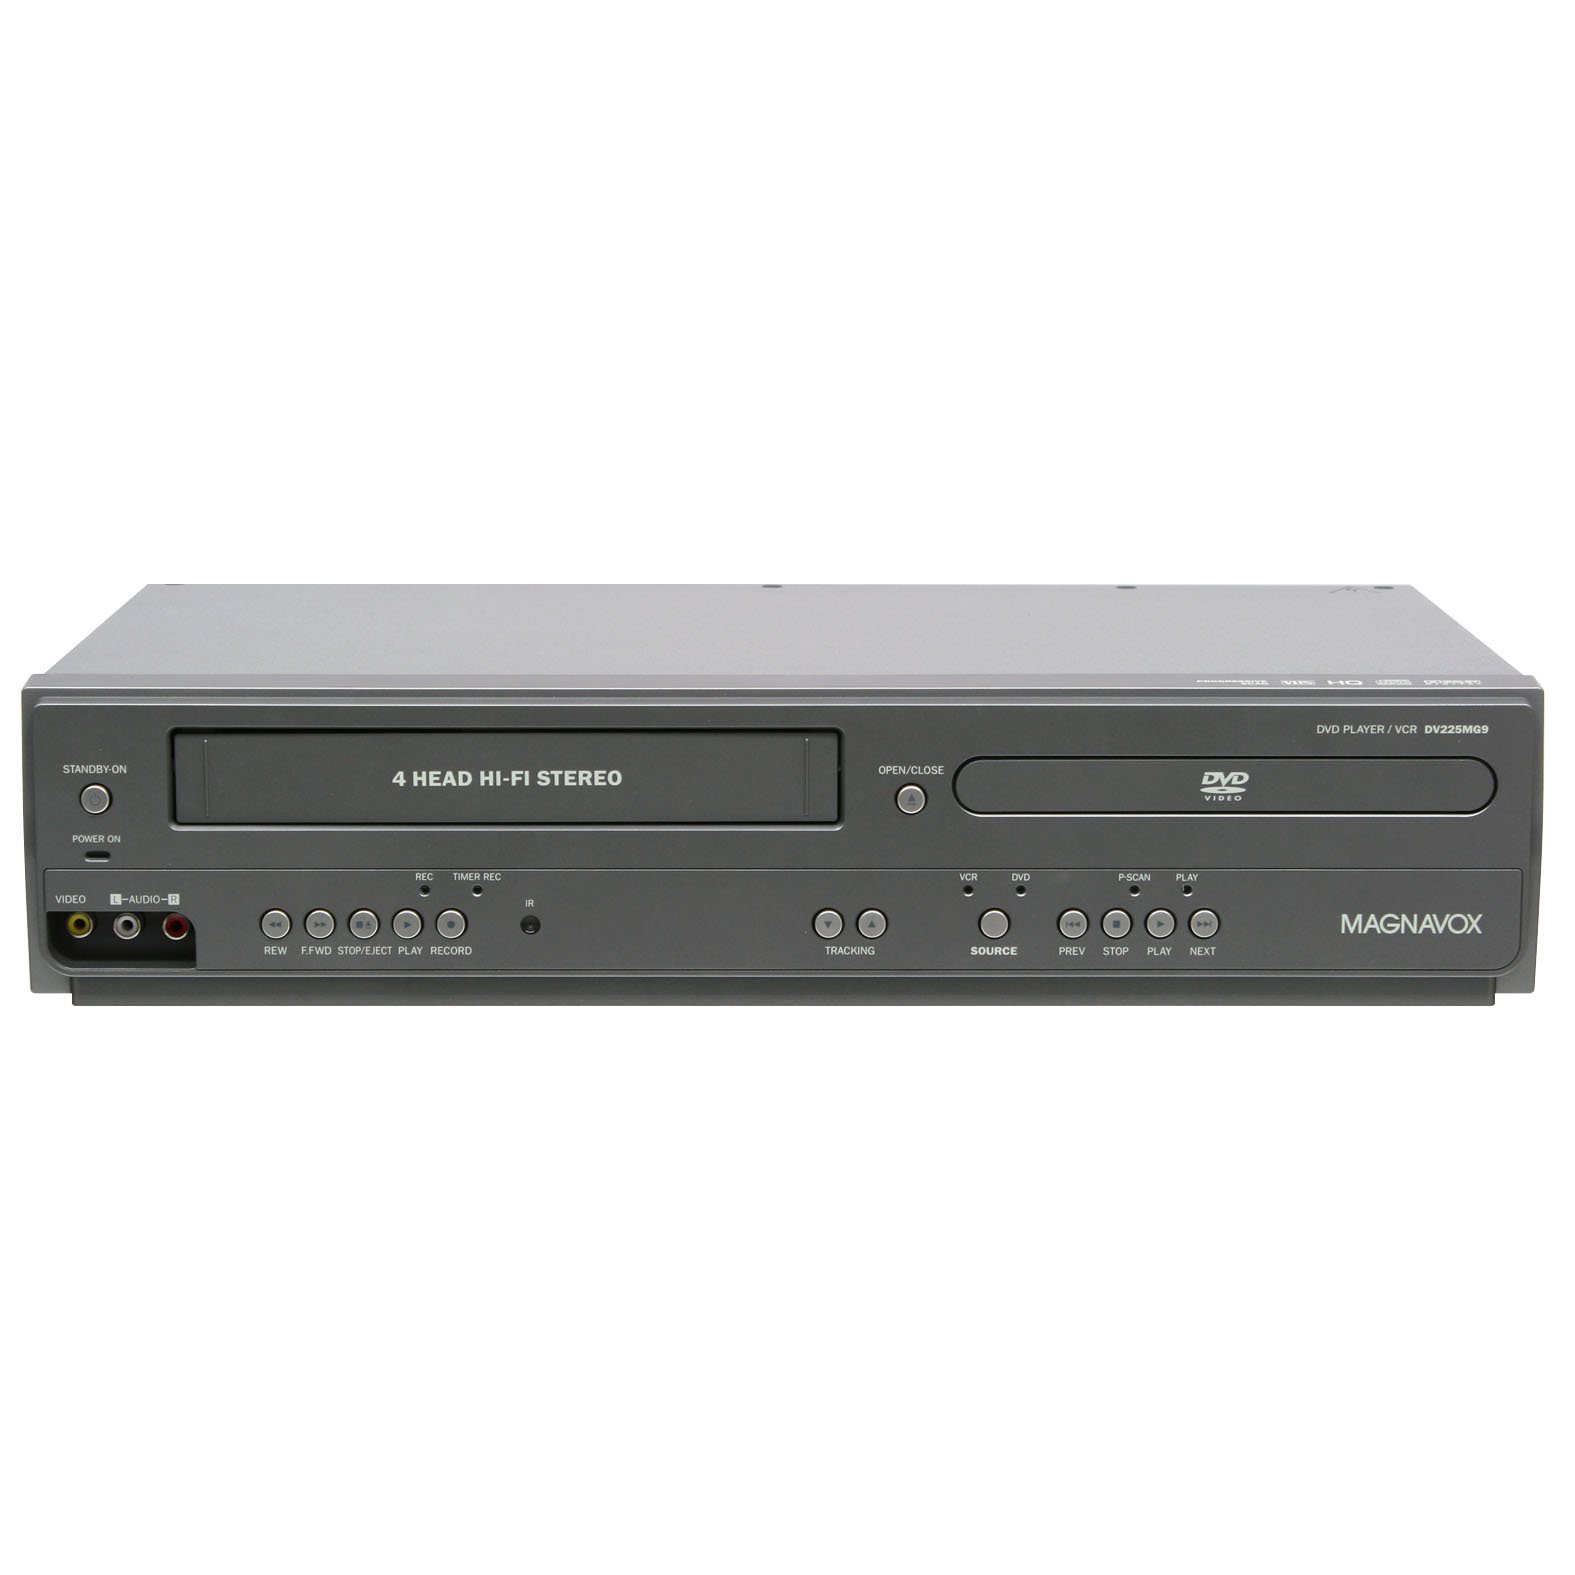 Magnavox DV225MG9 Leitor de DVD e VCR Estéreo Hi-Fi de 4 Cabeças com Gravação Line-in